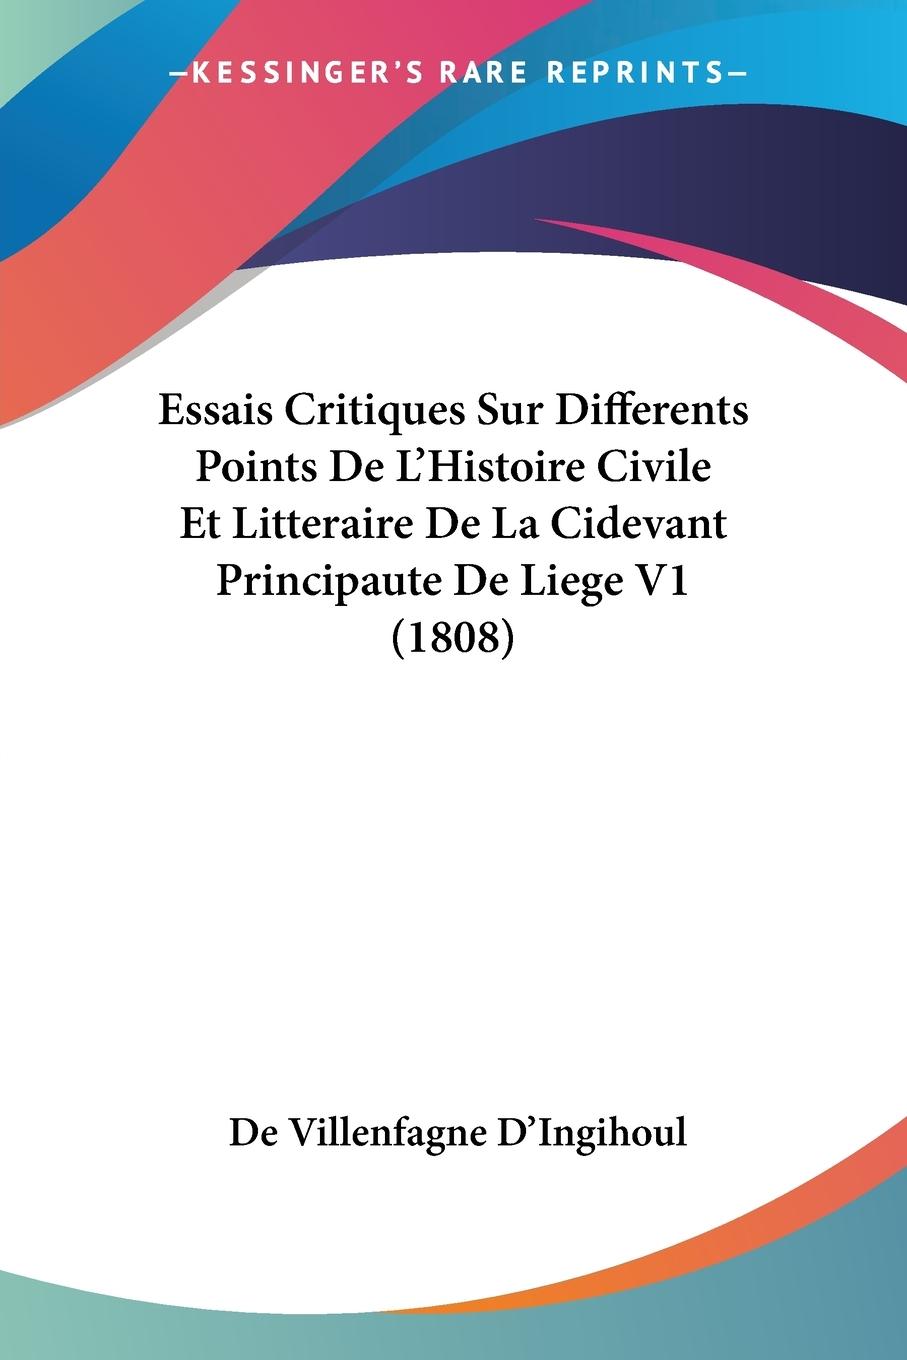 Essais Critiques Sur Differents Points De L Histoire Civile Et Litteraire De La Cidevant Principaute De Liege V1 (1808) - D Ingihoul, De Villenfagne